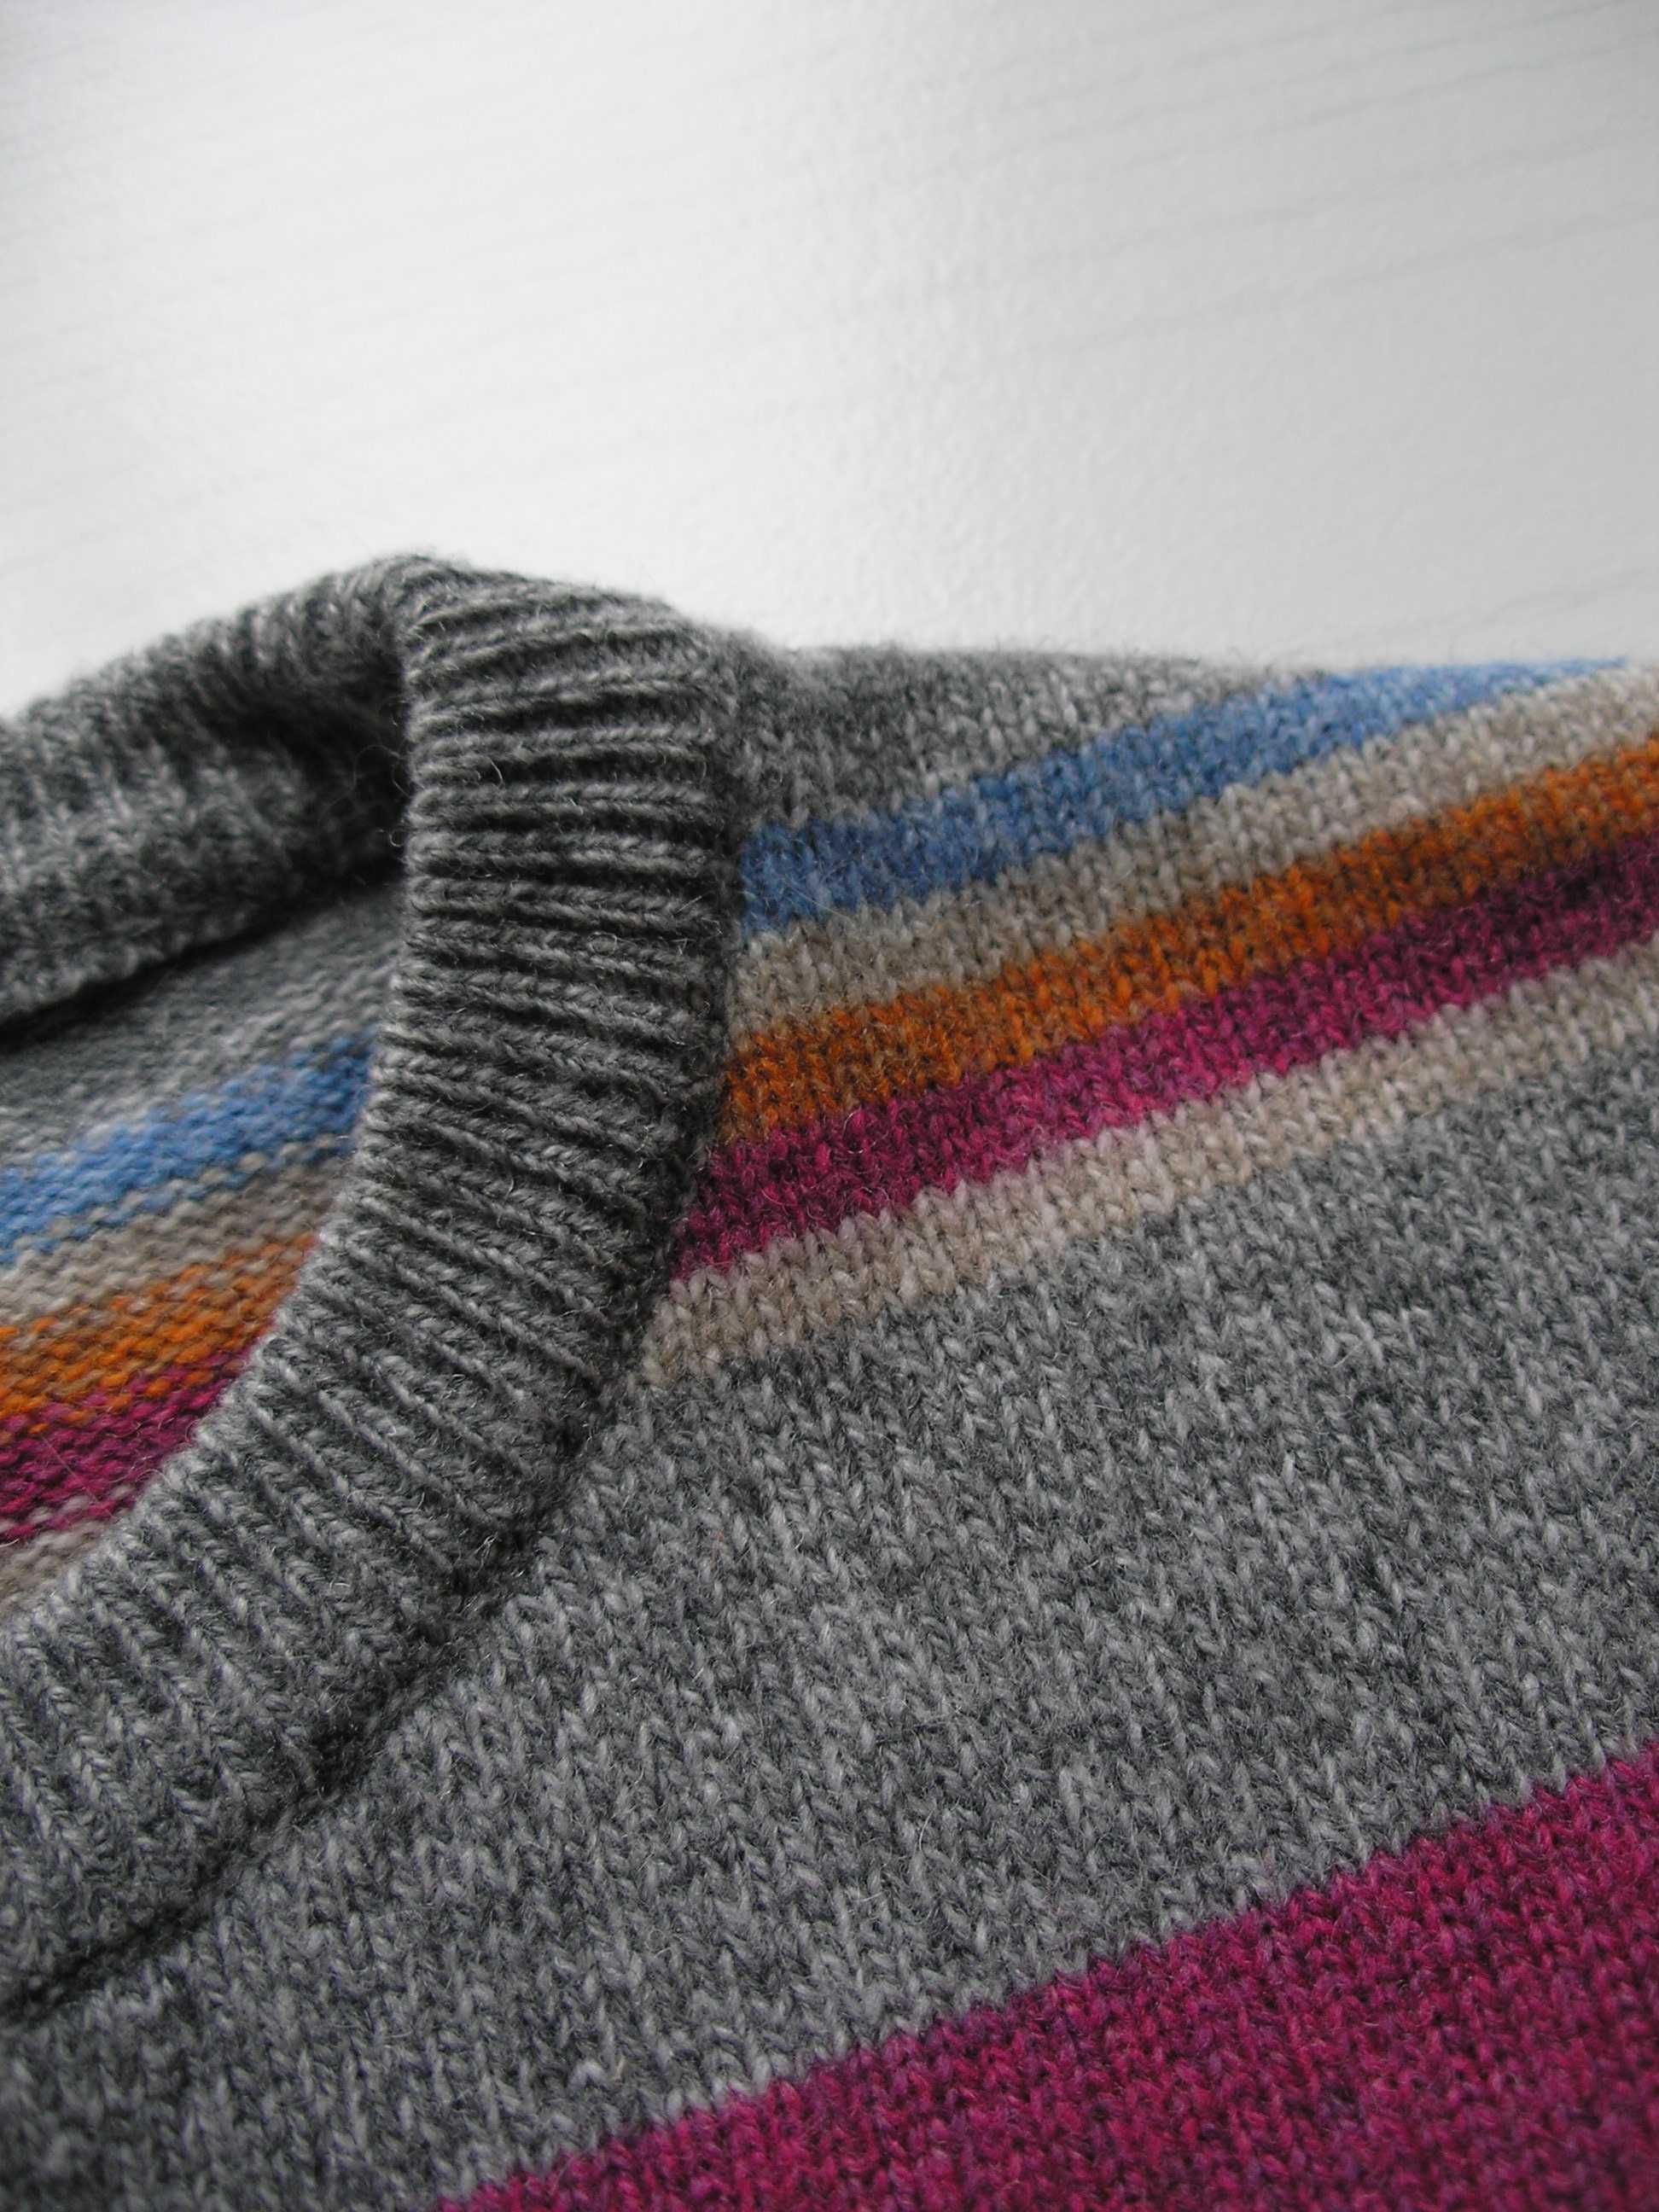 Мужской  шерстяной свитер 80% шерсть италия размер XL